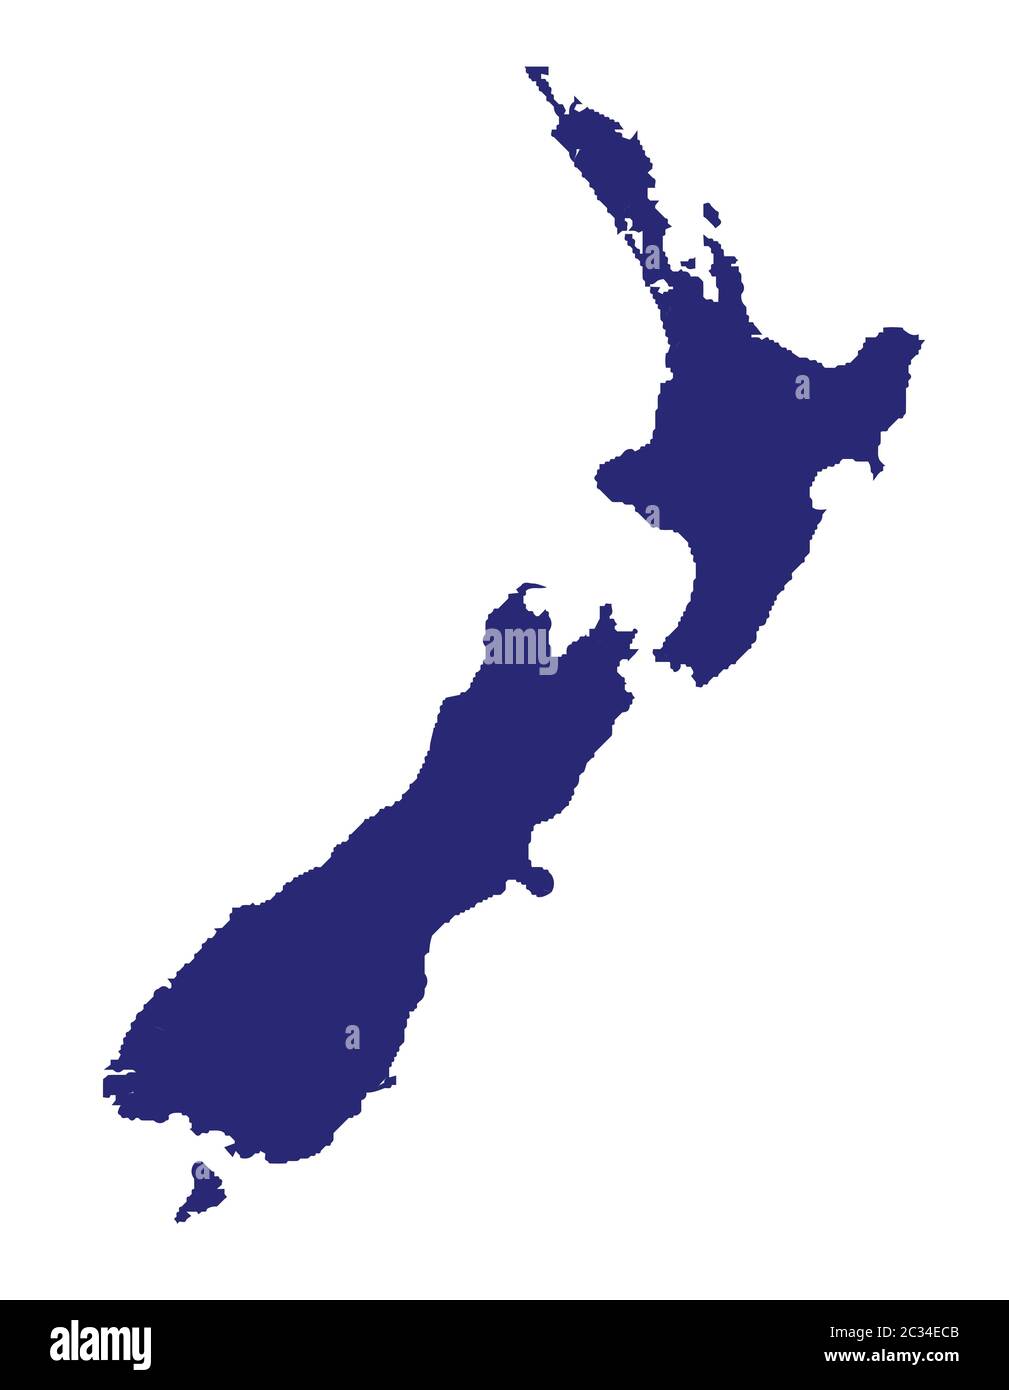 Carte de la Nouvelle-Zélande sur un fond blanc Banque D'Images